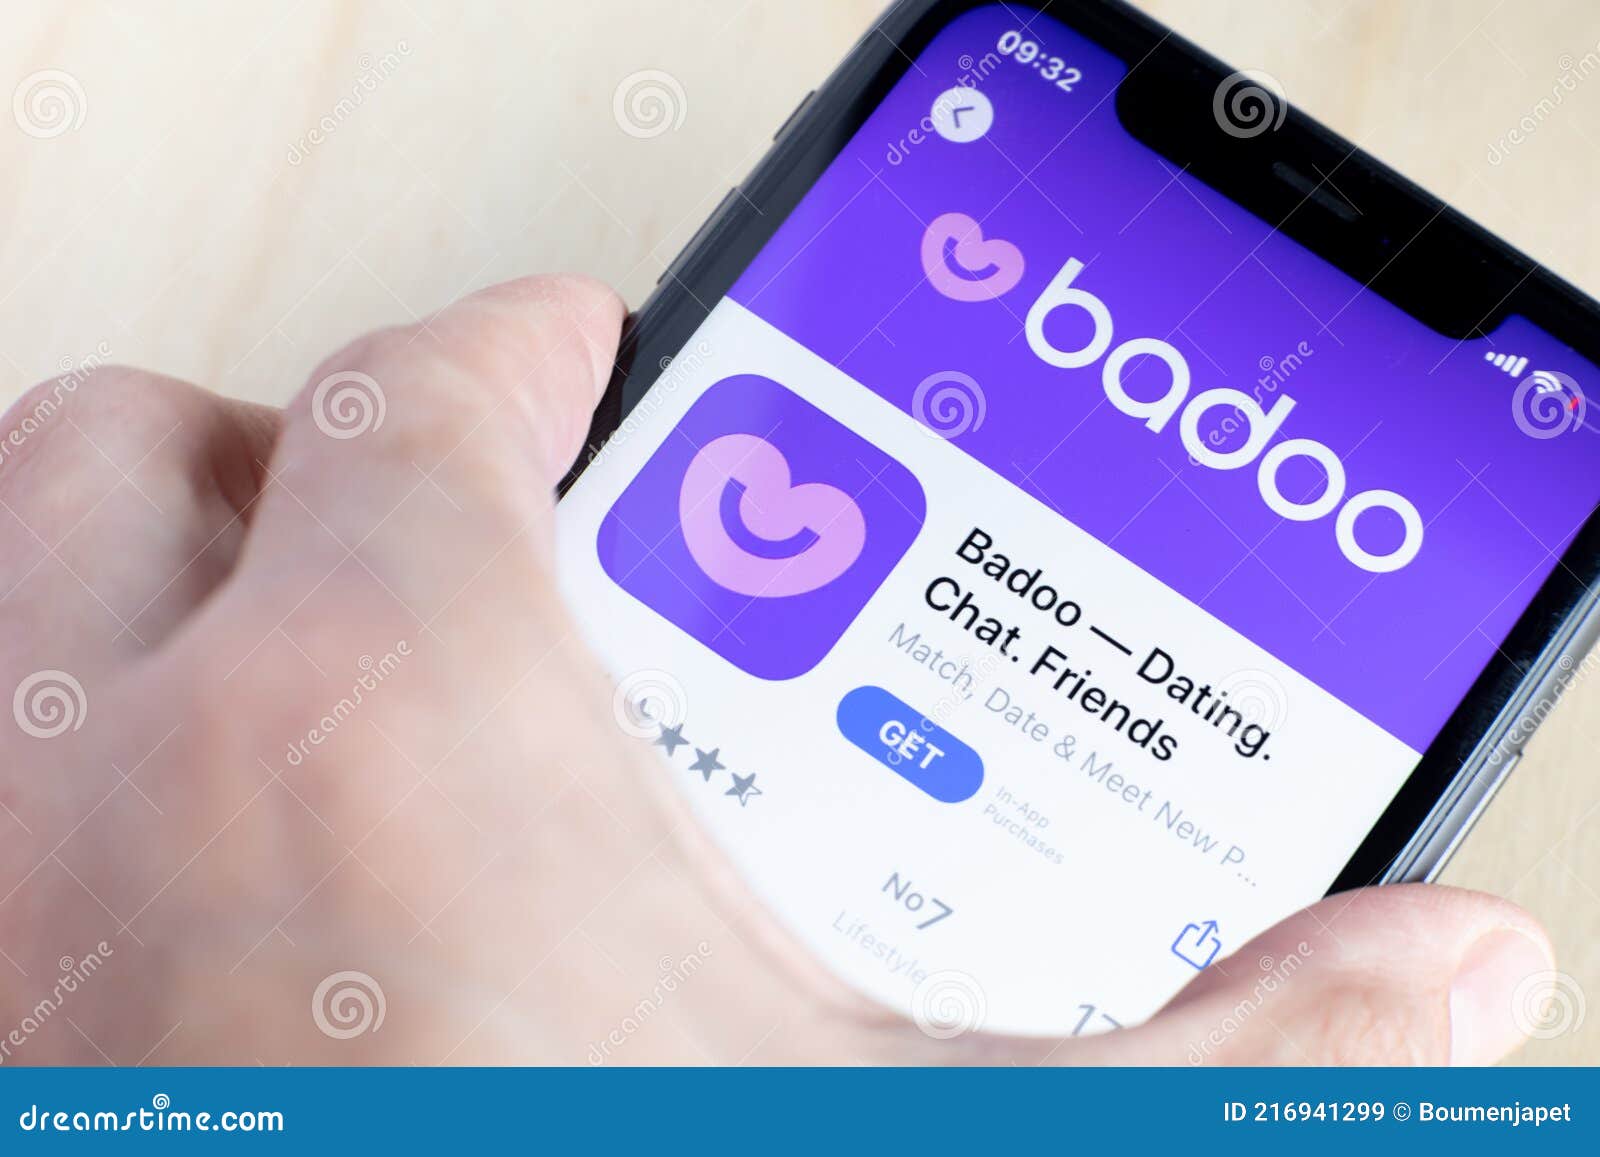 Chat in badoo sign ‎Badoo —